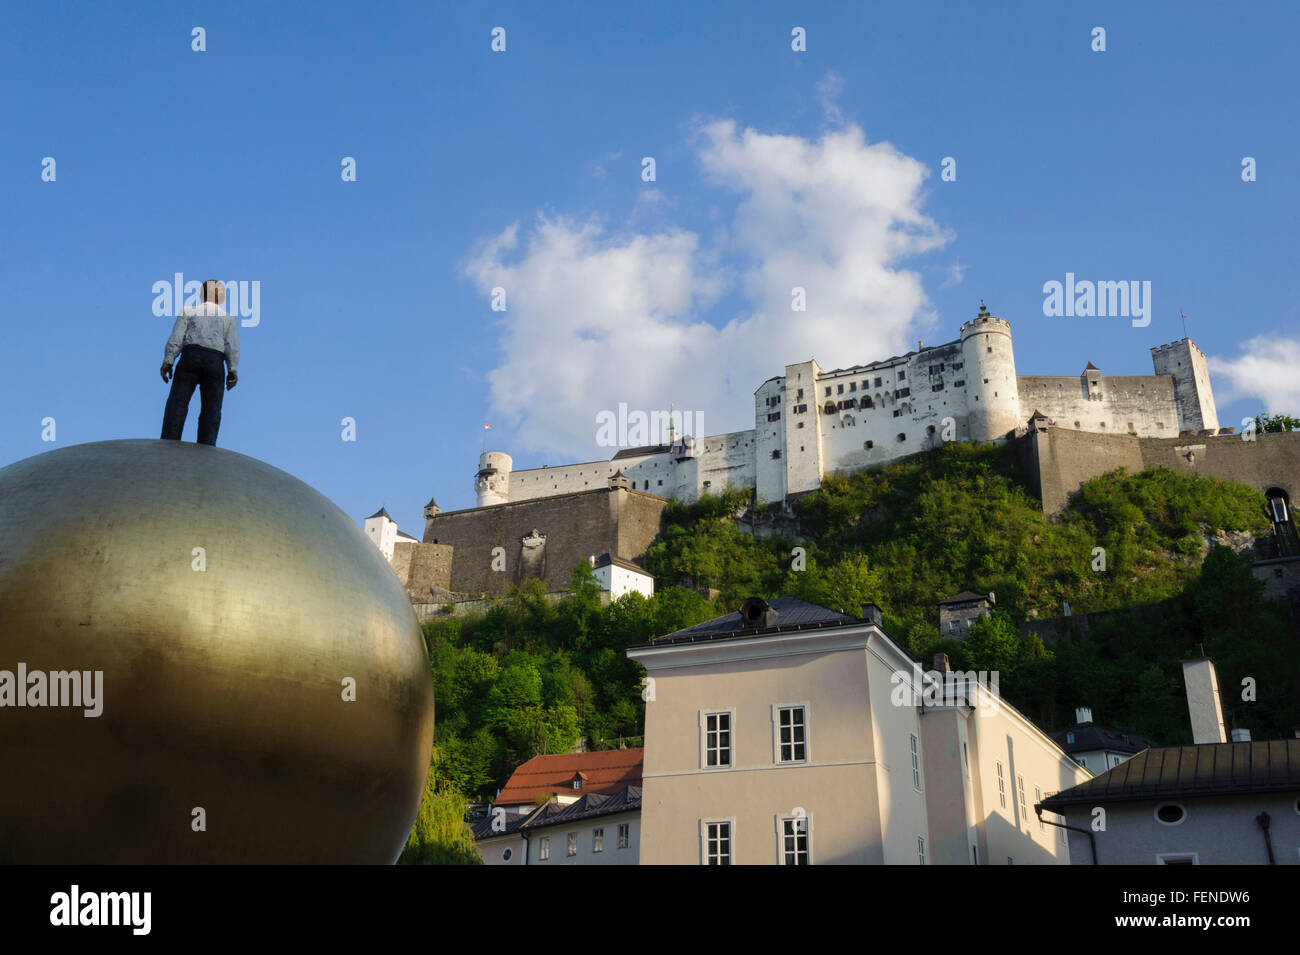 Kunstwerk Sphaera Auf 'm Kapitelplatz, Festung Hohensalzburg, das historische Zentrum der Stadt Salzburg, ein UNESCO-Weltkulturerbe Stockfoto